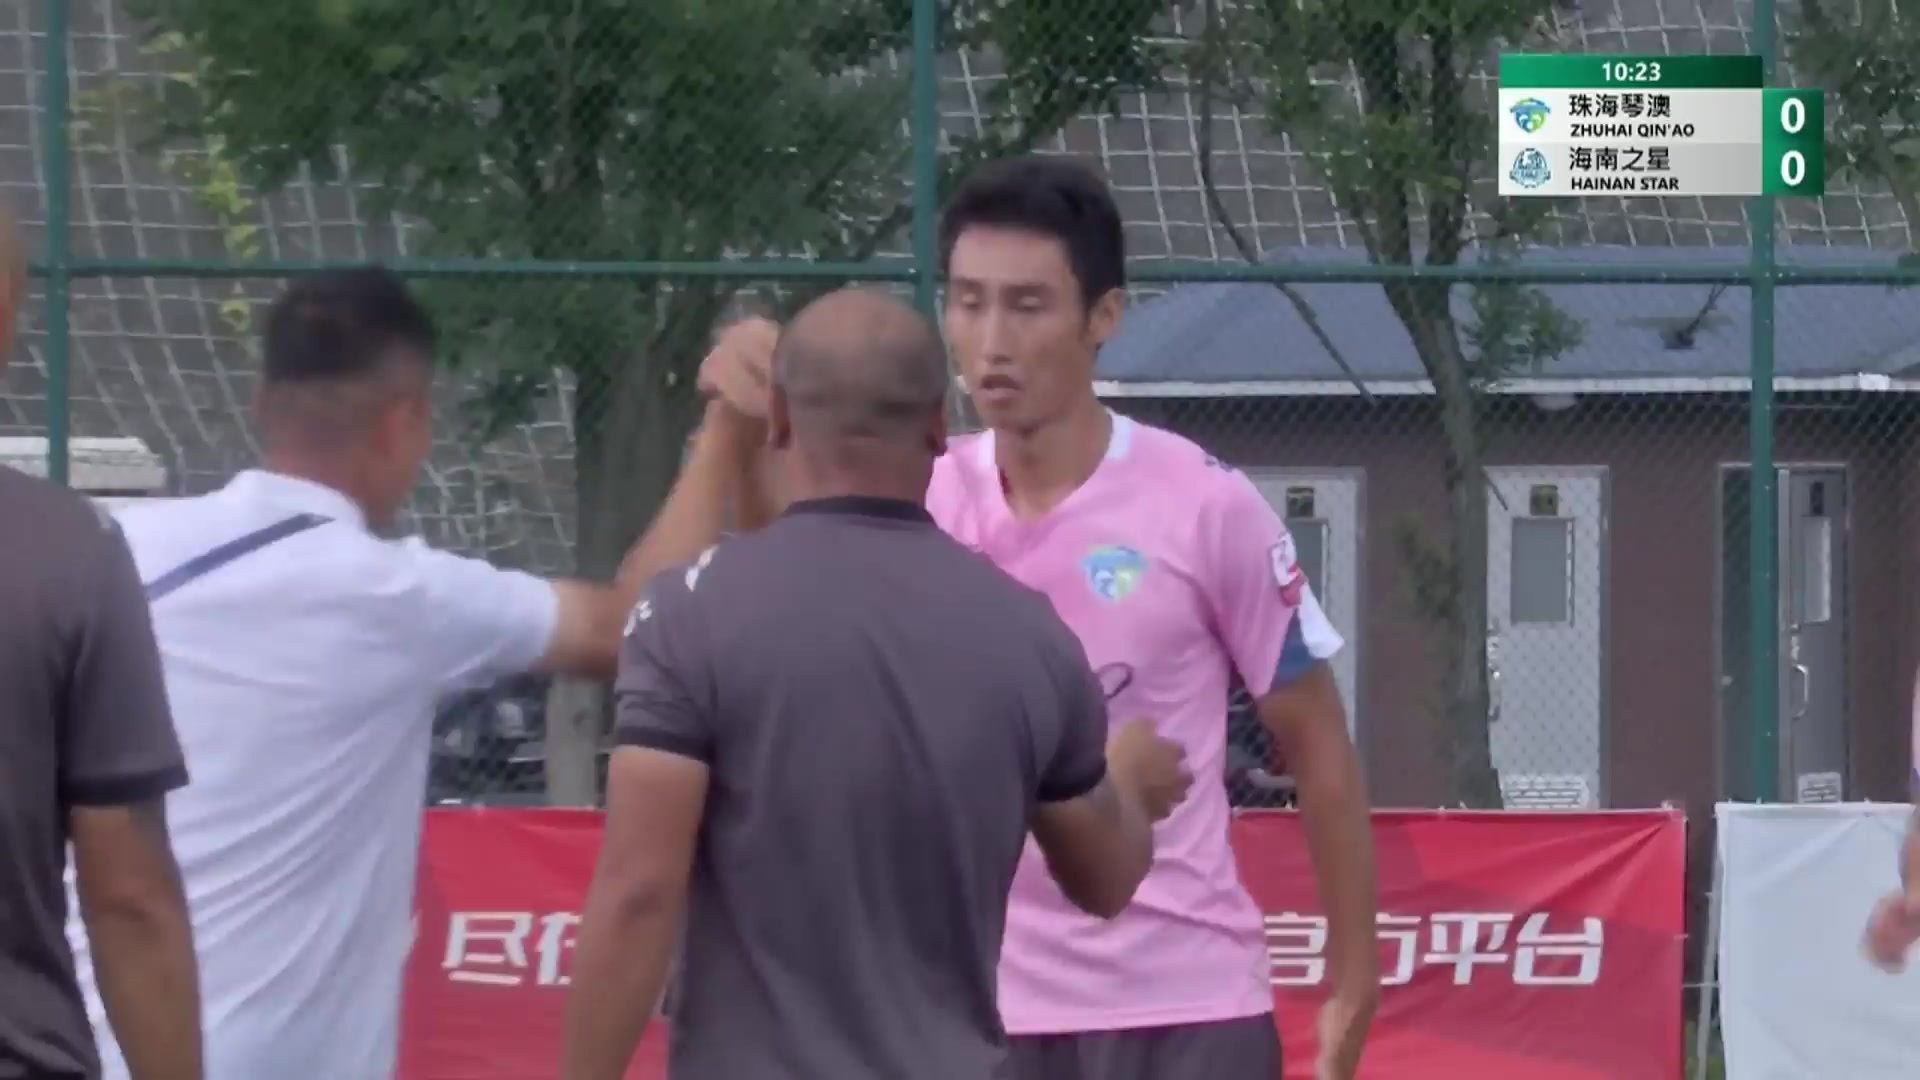 CHA D2 Qinao FC Vs Hainan Star Zhang Hui Goal in 10 min, Score 1:0